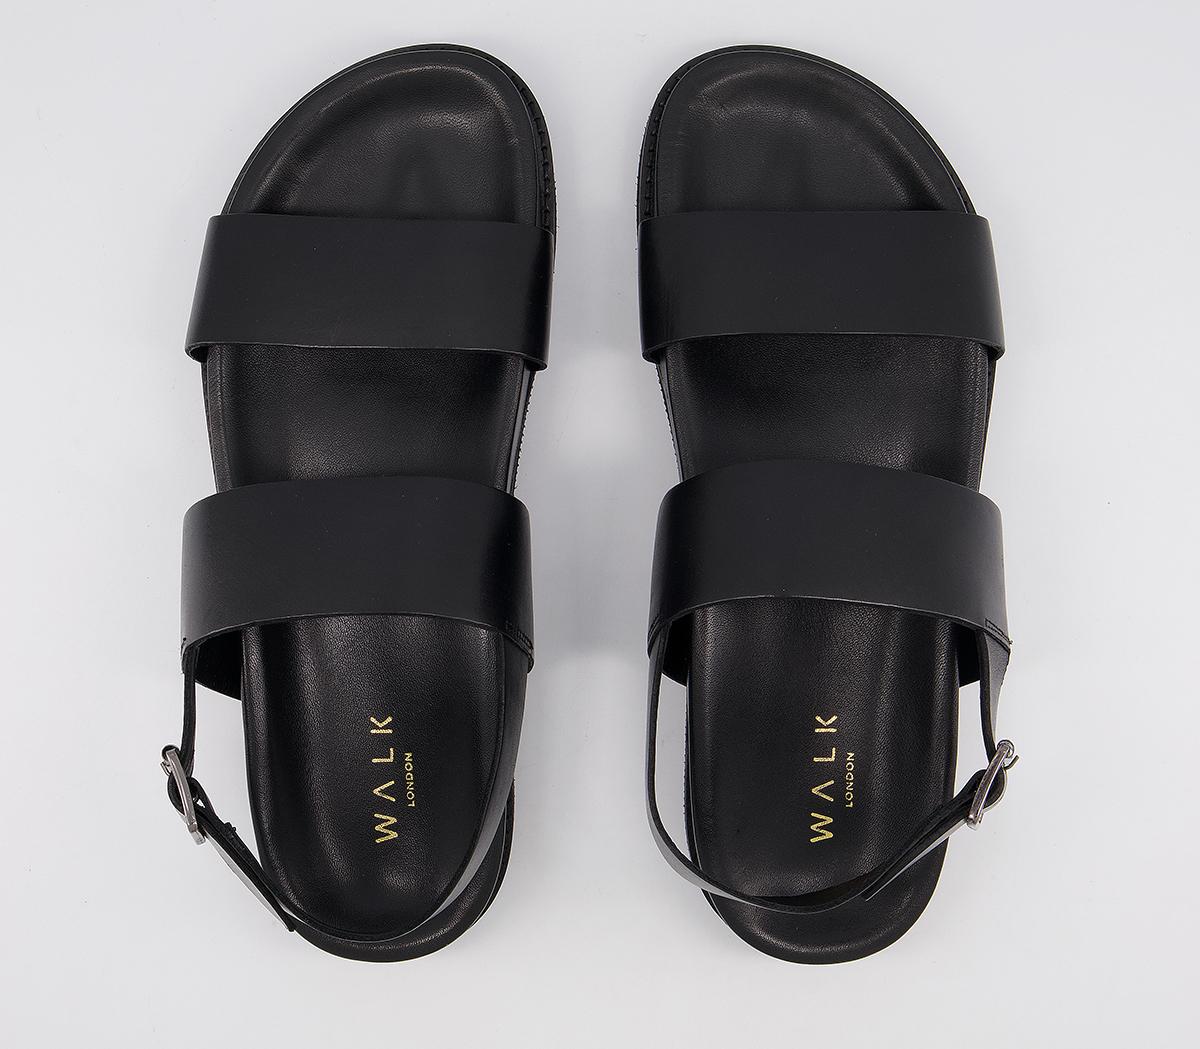 Walk London Jackson Sandals Black Leather - Men’s Sandals